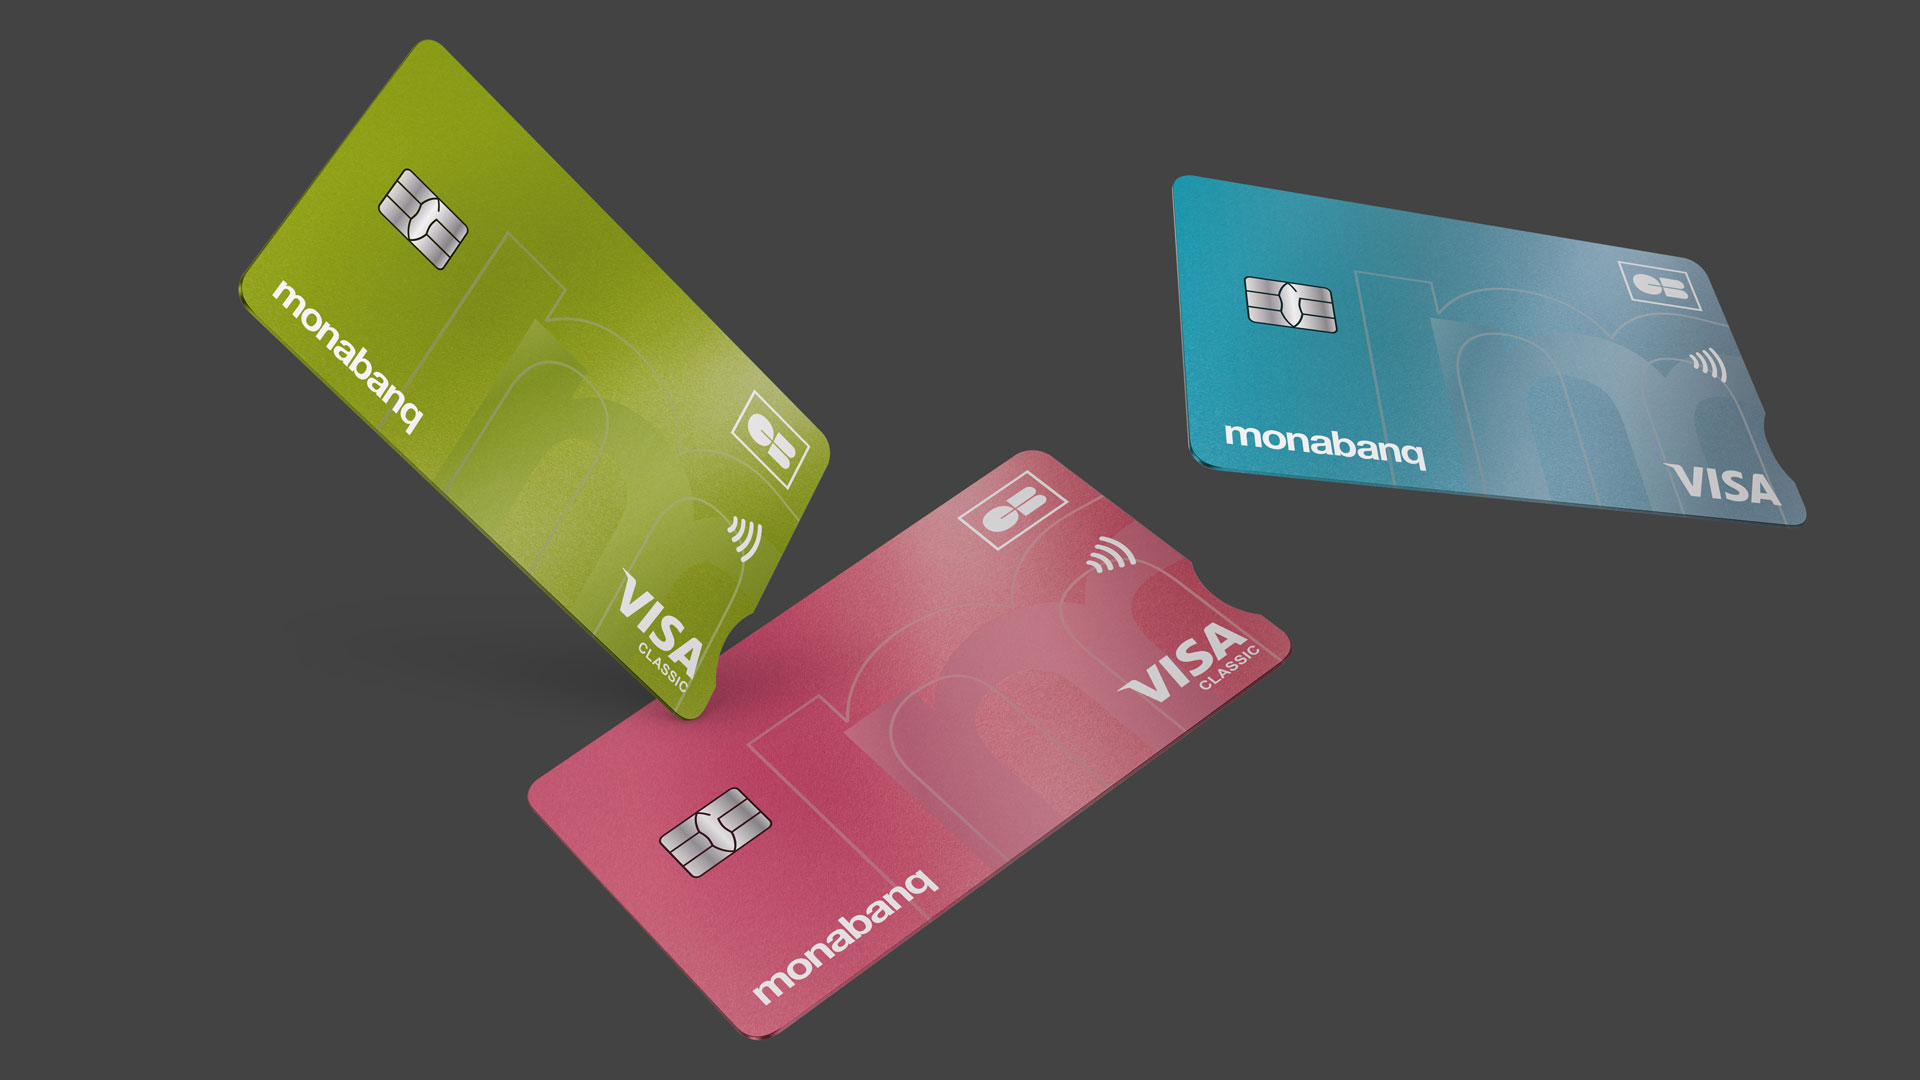 Présentation en 3d des 3 cartes grand public de la gamme visa disponible chez Monabanq.